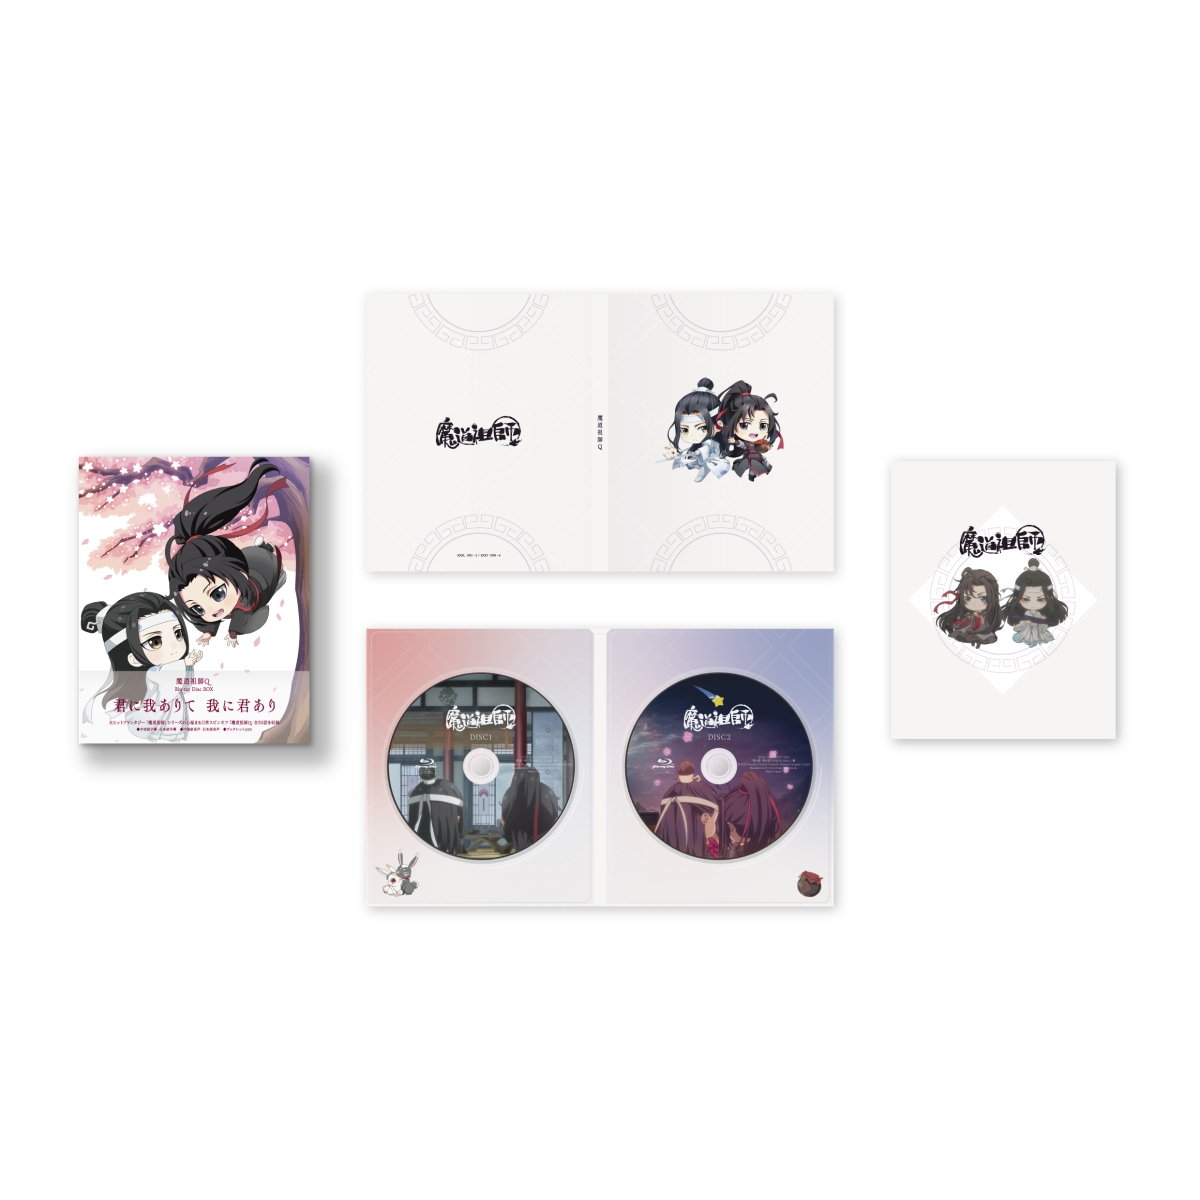 魔道祖師Q Blu-ray Disc BOX(完全生産限定版)【Blu-ray】 [ 申琳 ]画像